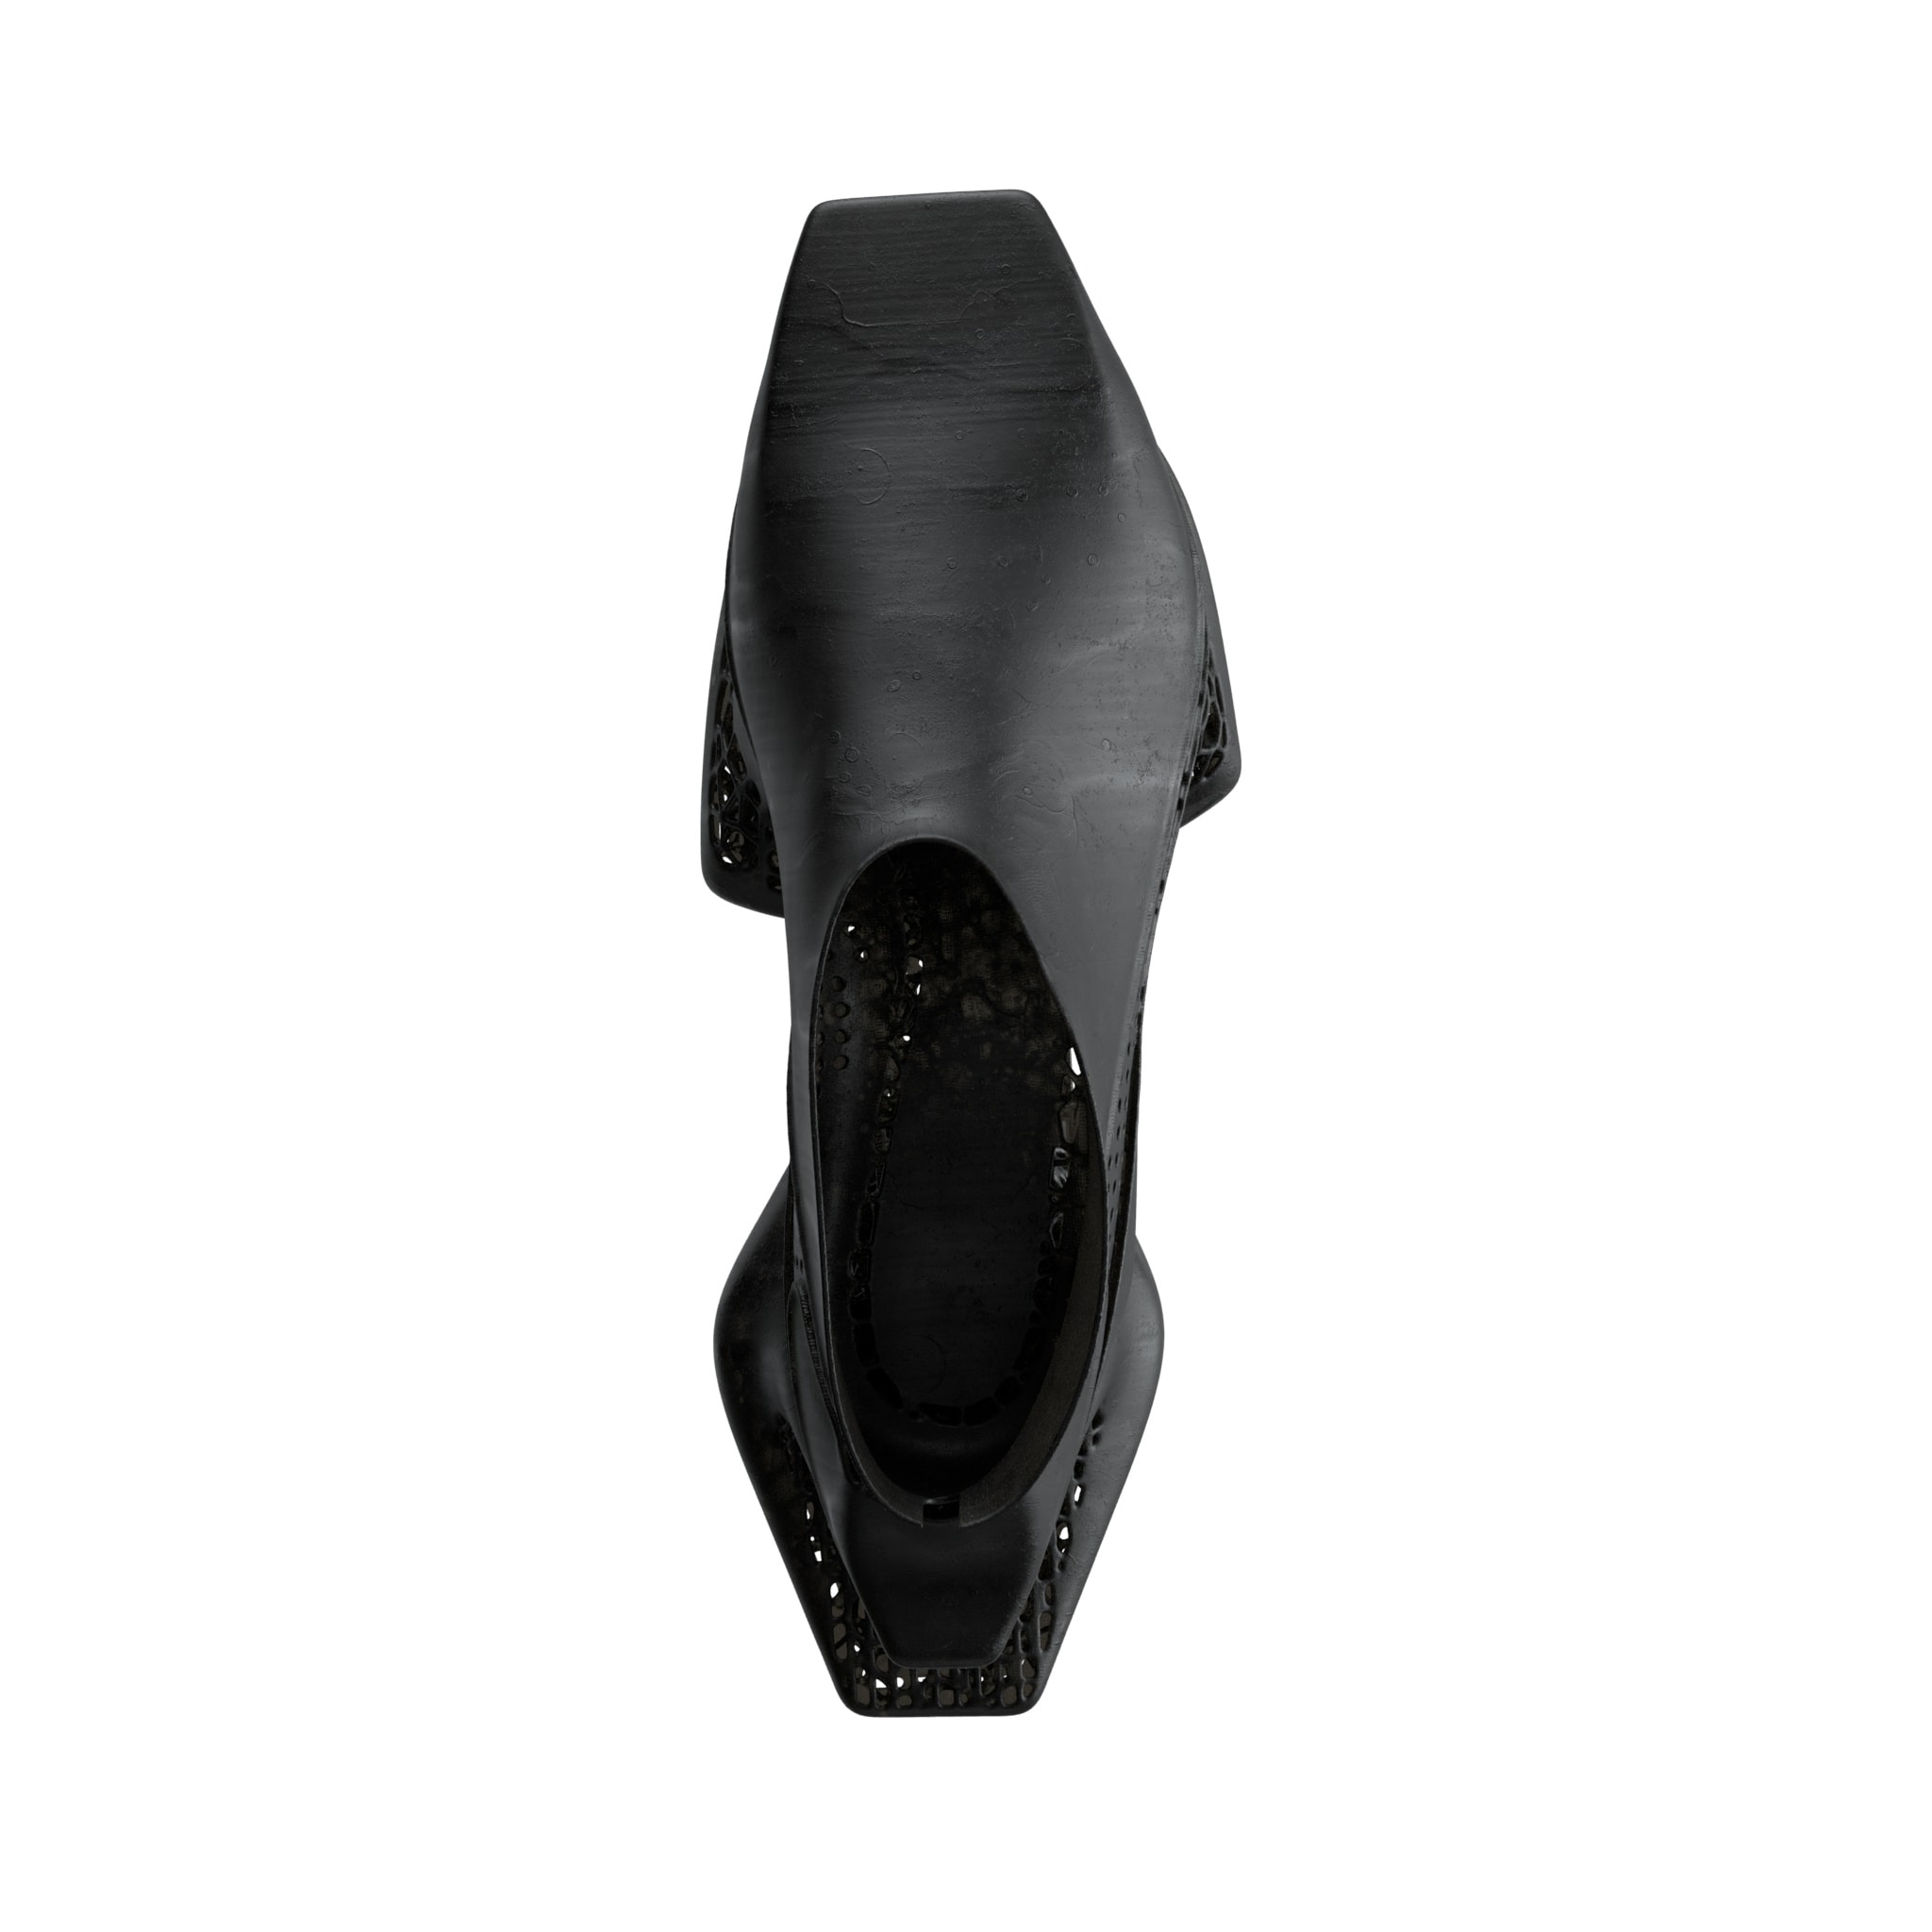 SCRY 正式发布全新 Stela Basic & Erosion 鞋款系列